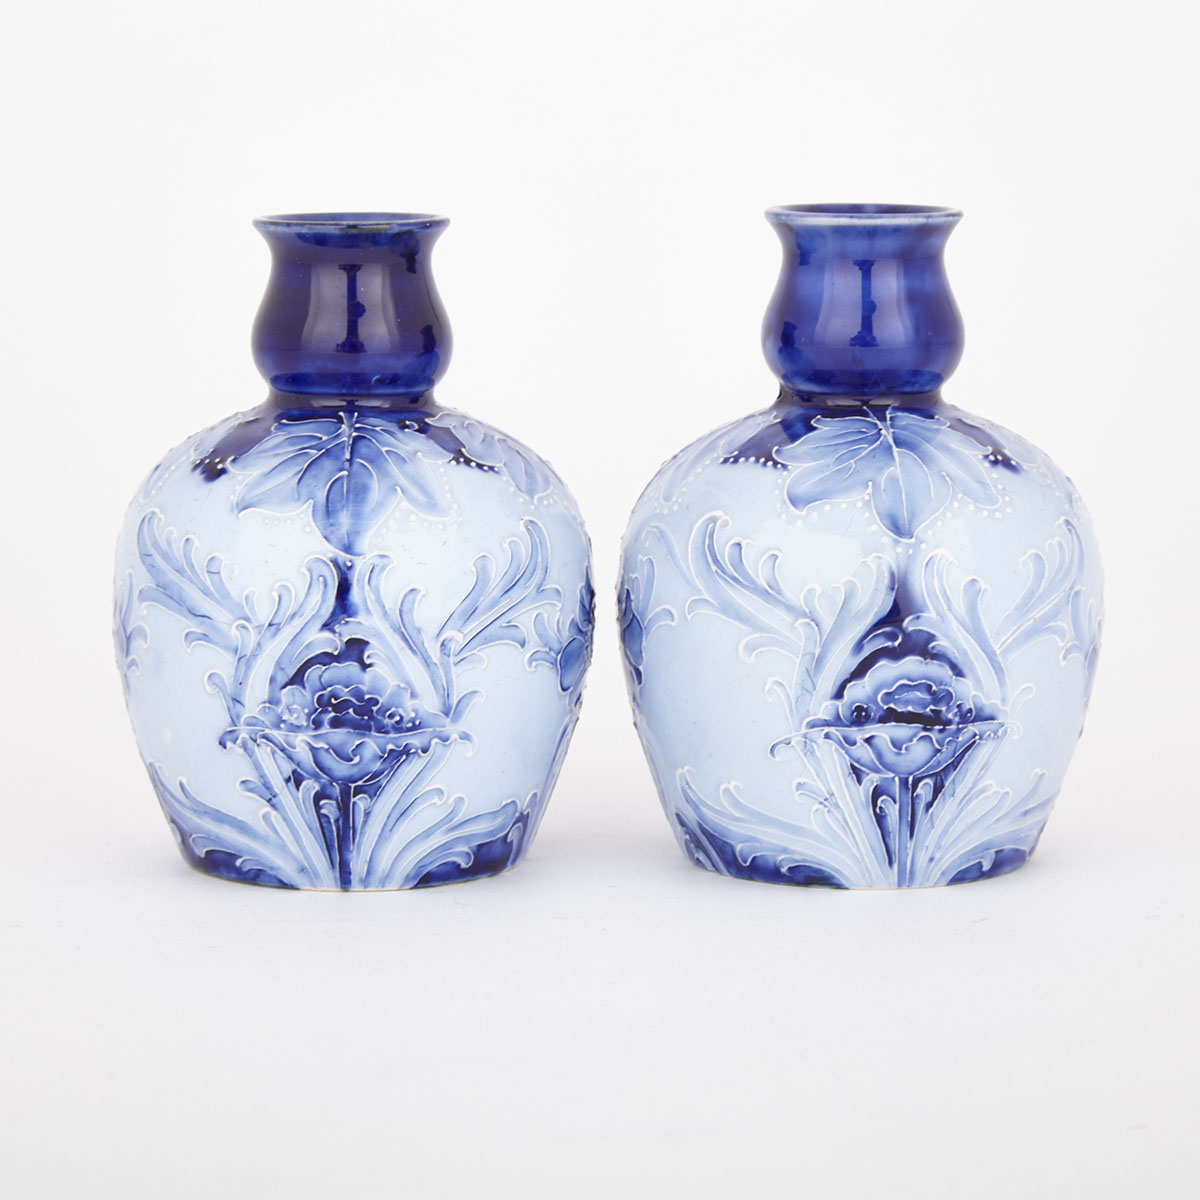 Pair of Macintyre Moorcroft Florian Ware Poppy Vases, c.1900